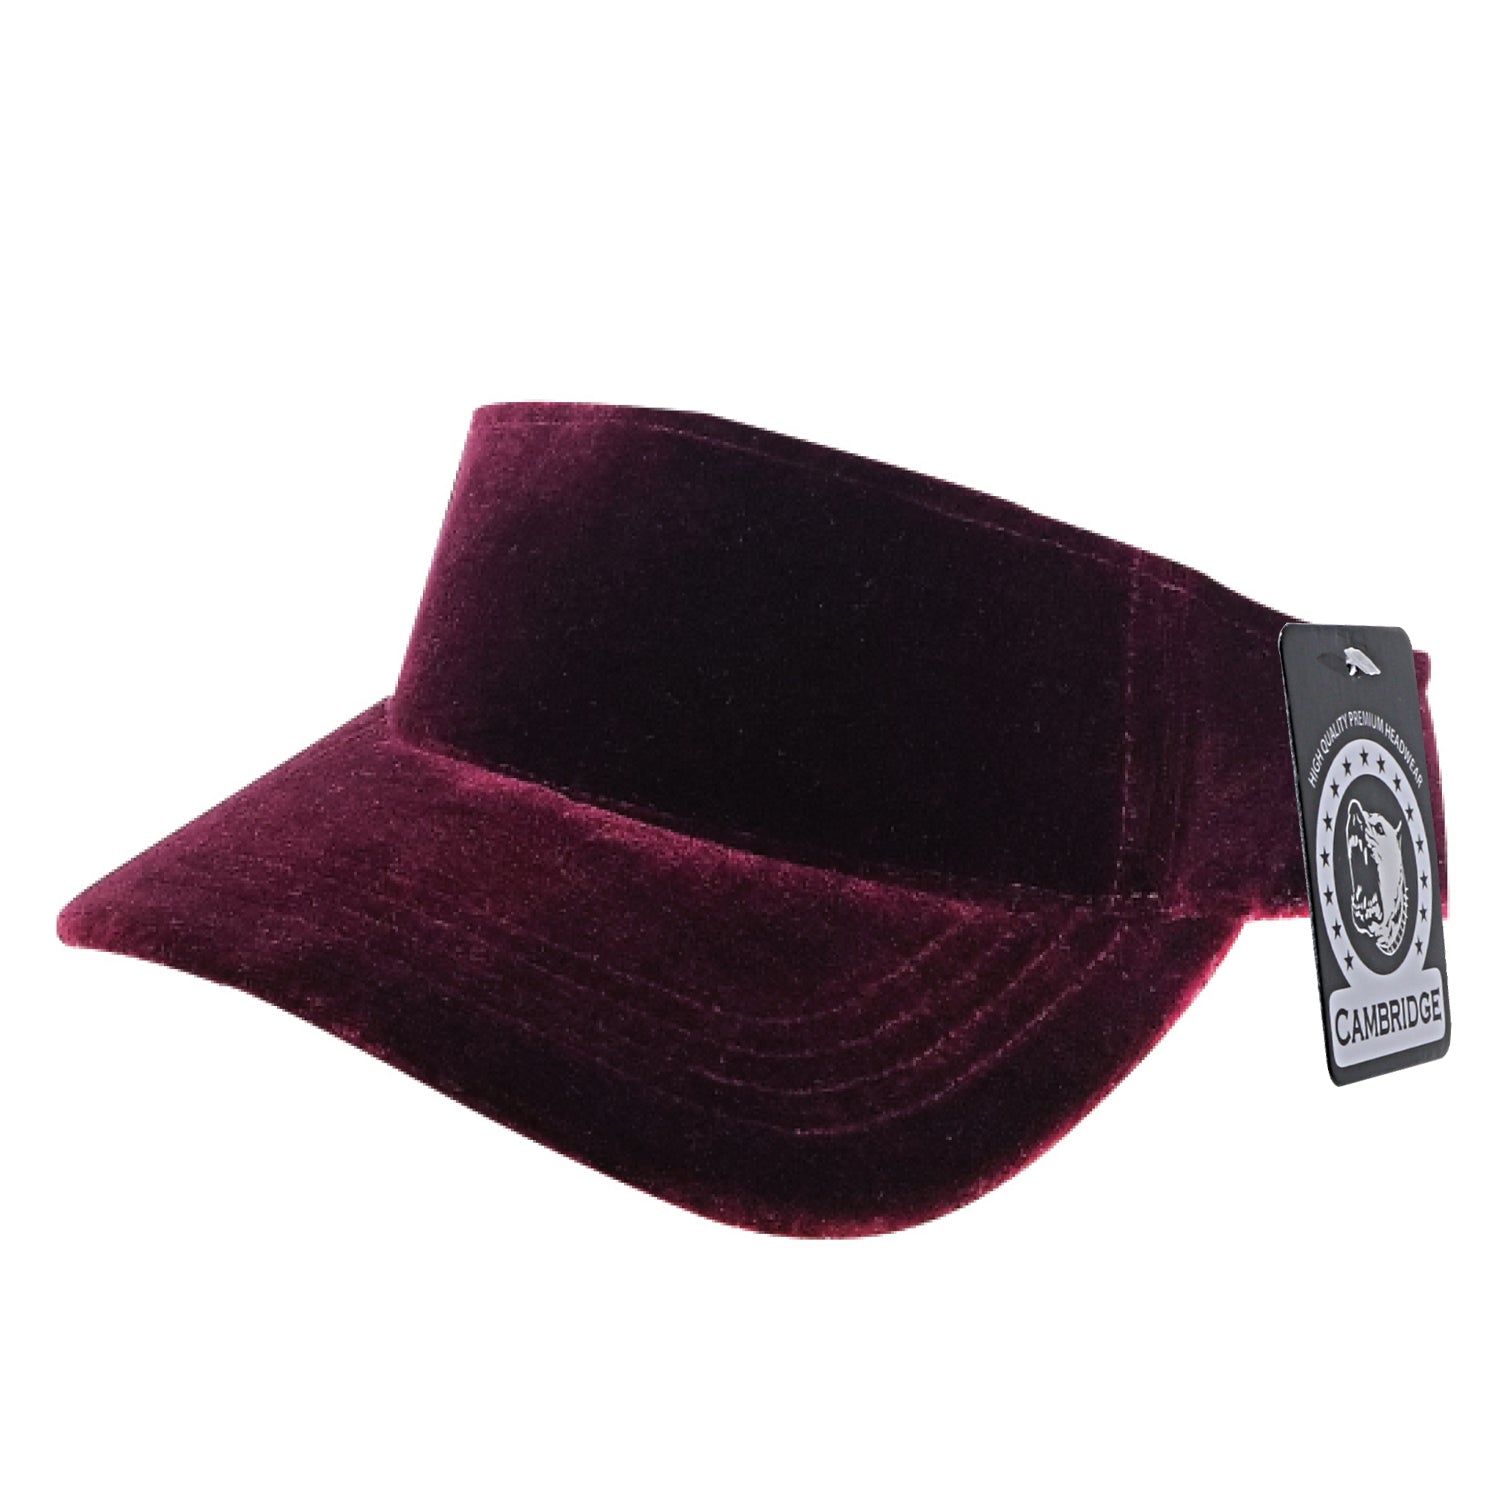 PB246 Pit Velvet Sun Visor Hats [Burgundy] – CHOICE CAP, INC.